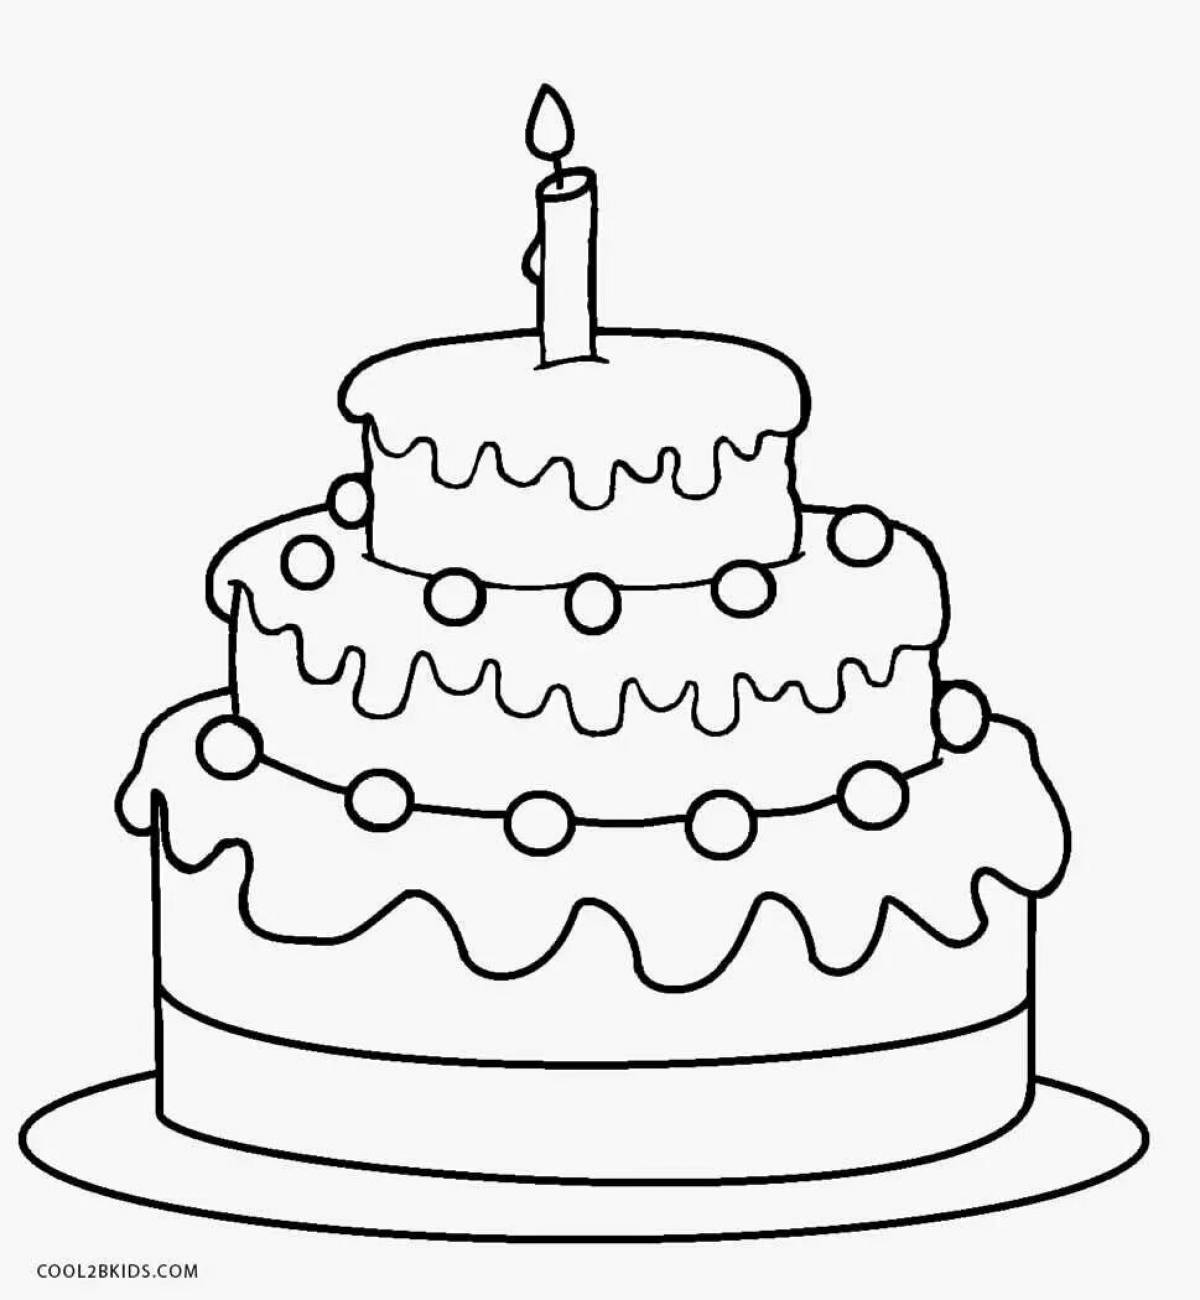 Цветной пышный торт ко дню рождения раскраска